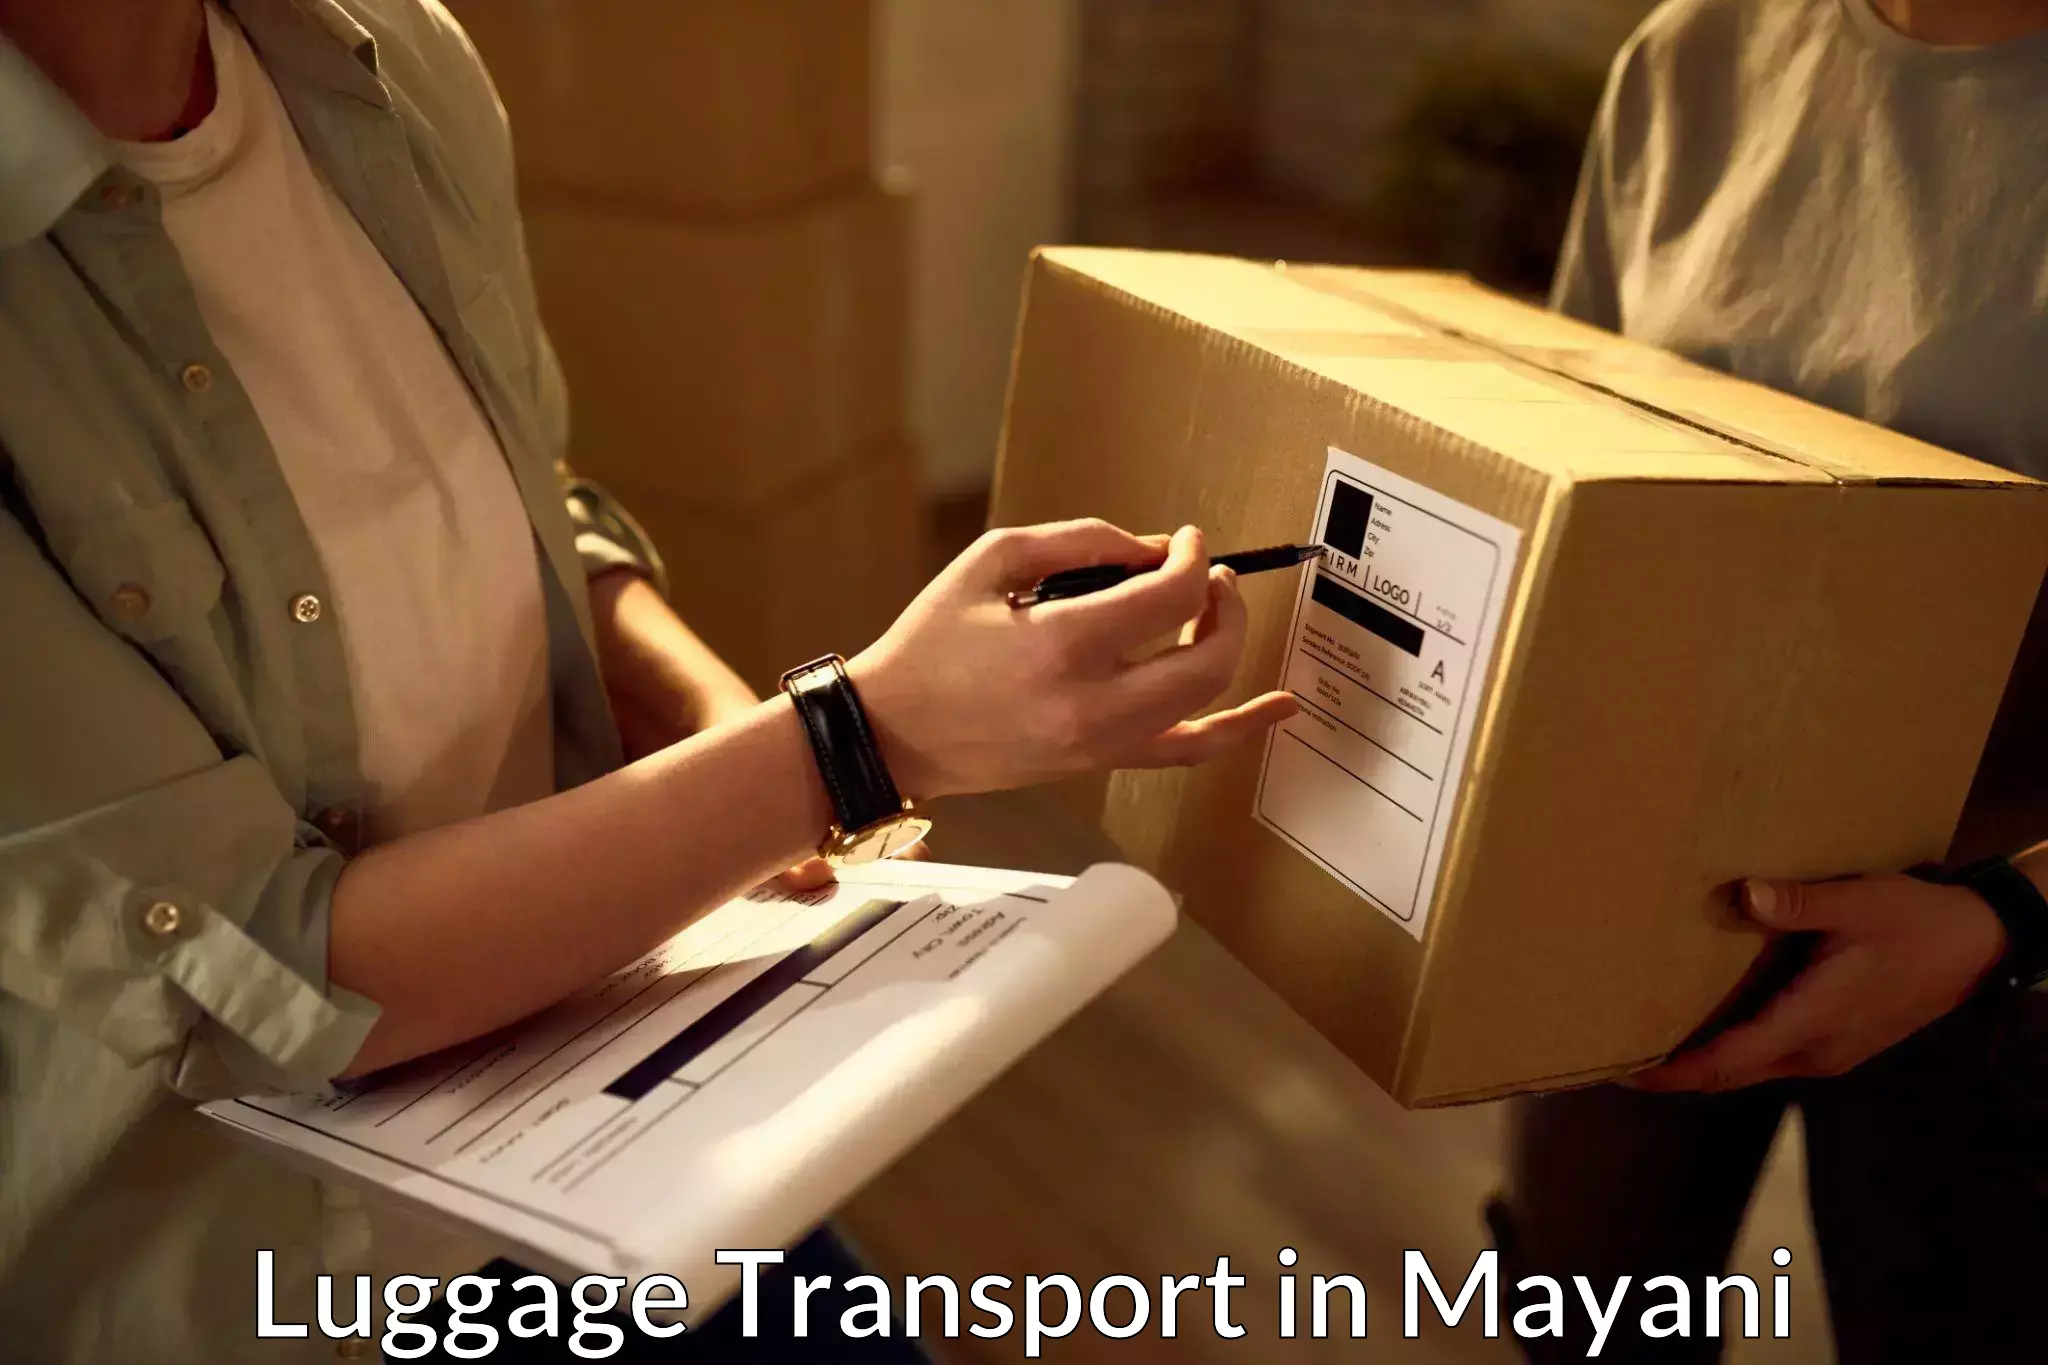 Luggage shipment tracking in Mayani